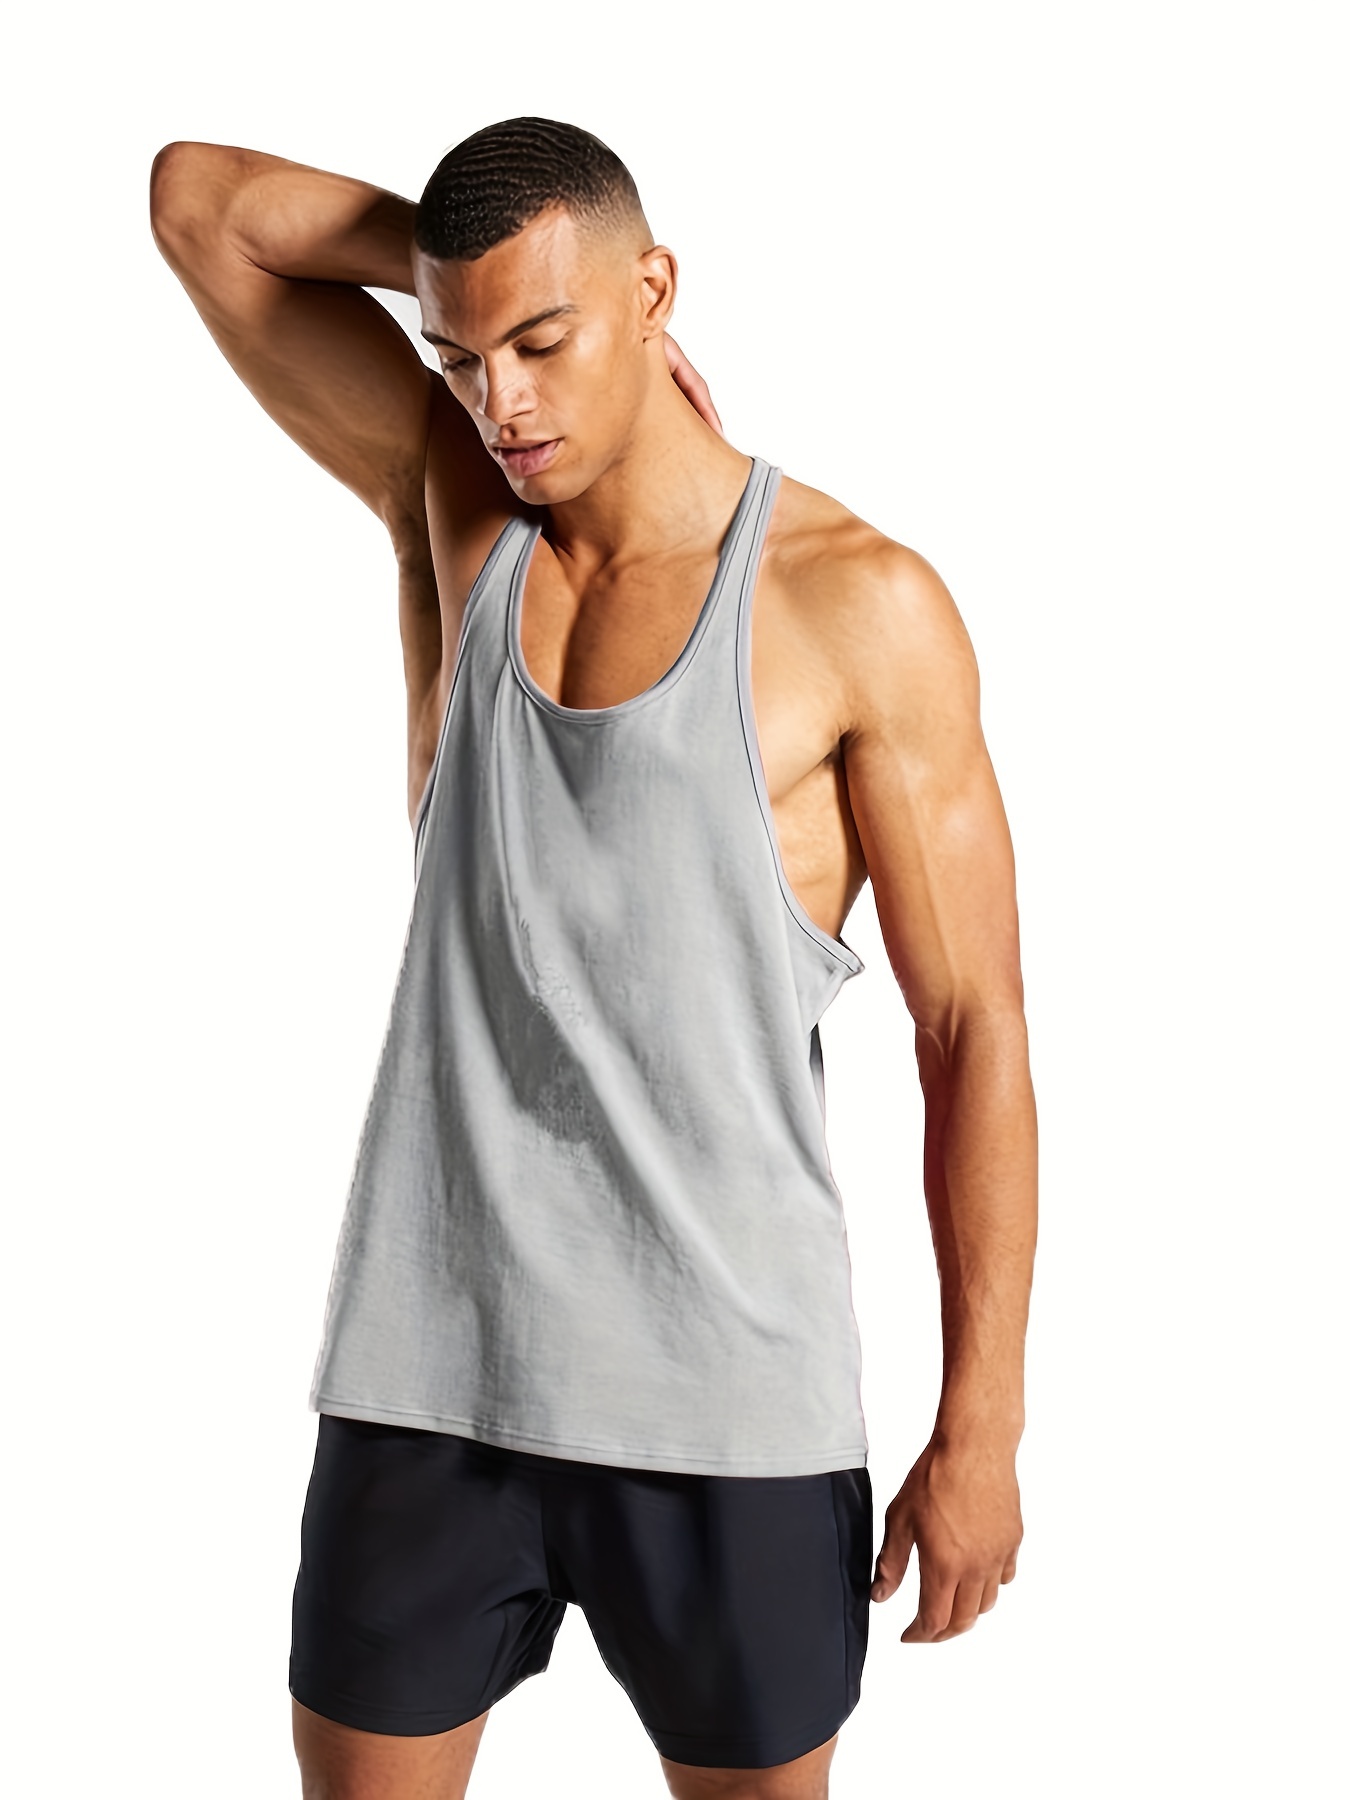 ZUDIO slim fit vest  Workout vest, Athletic tank tops, Clothes design